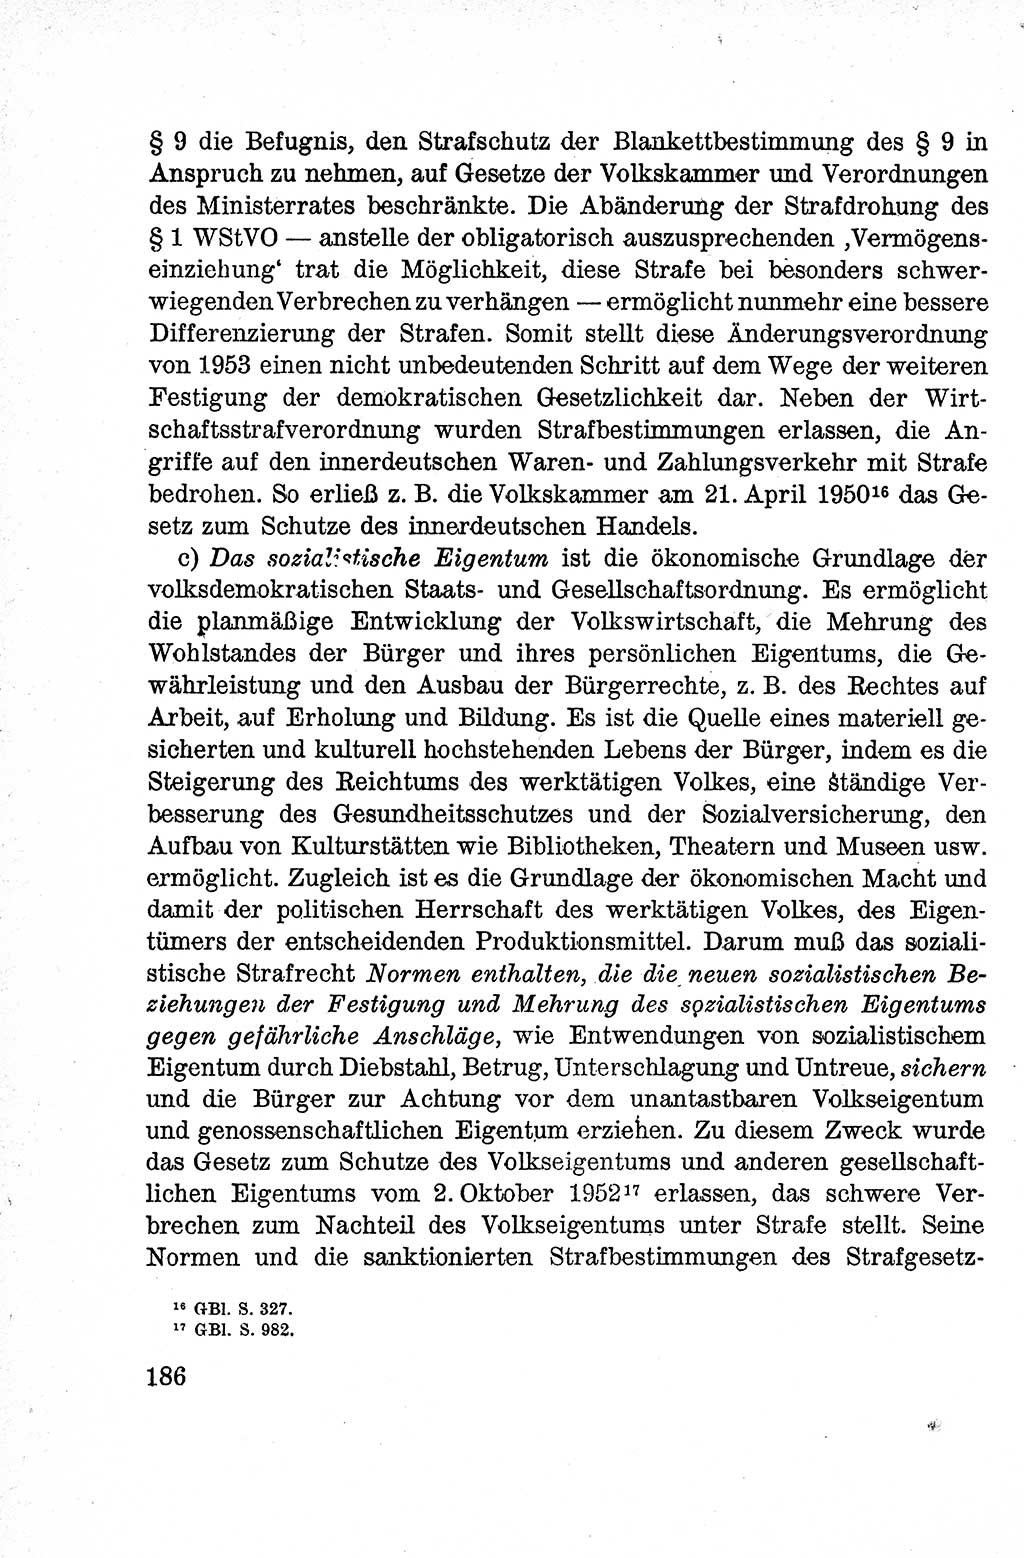 Lehrbuch des Strafrechts der Deutschen Demokratischen Republik (DDR), Allgemeiner Teil 1959, Seite 186 (Lb. Strafr. DDR AT 1959, S. 186)